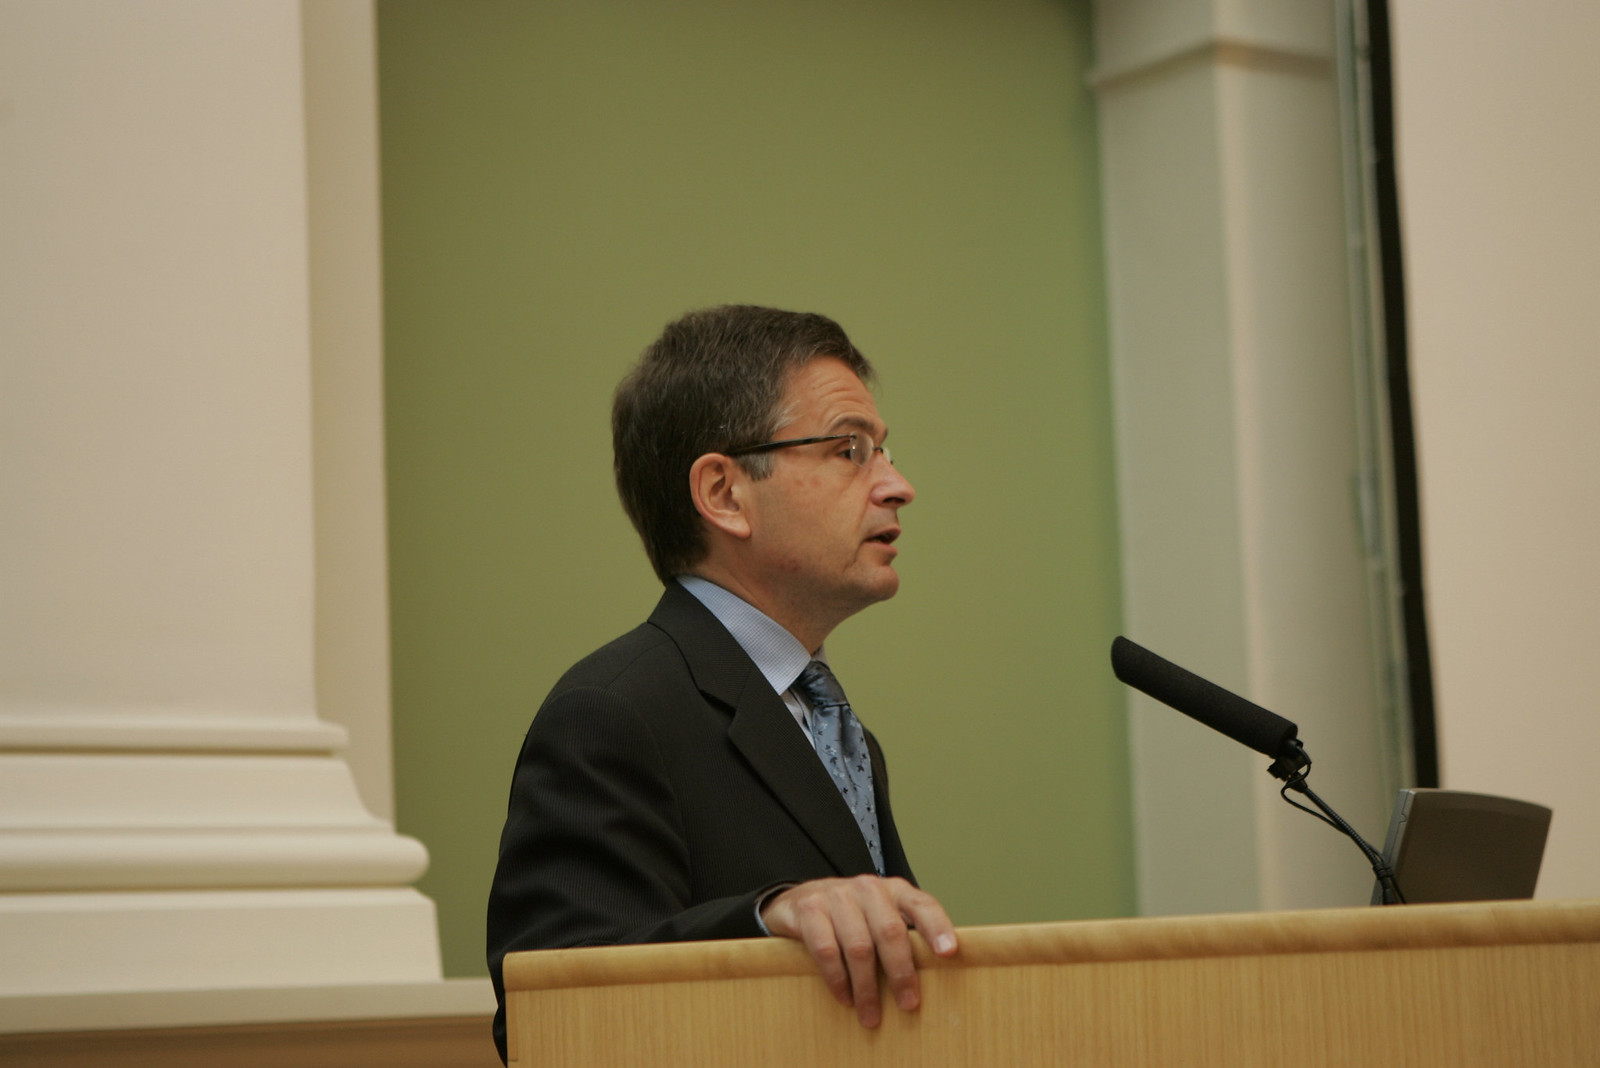 11 Mayor of Helsinki Jussi Pajunen